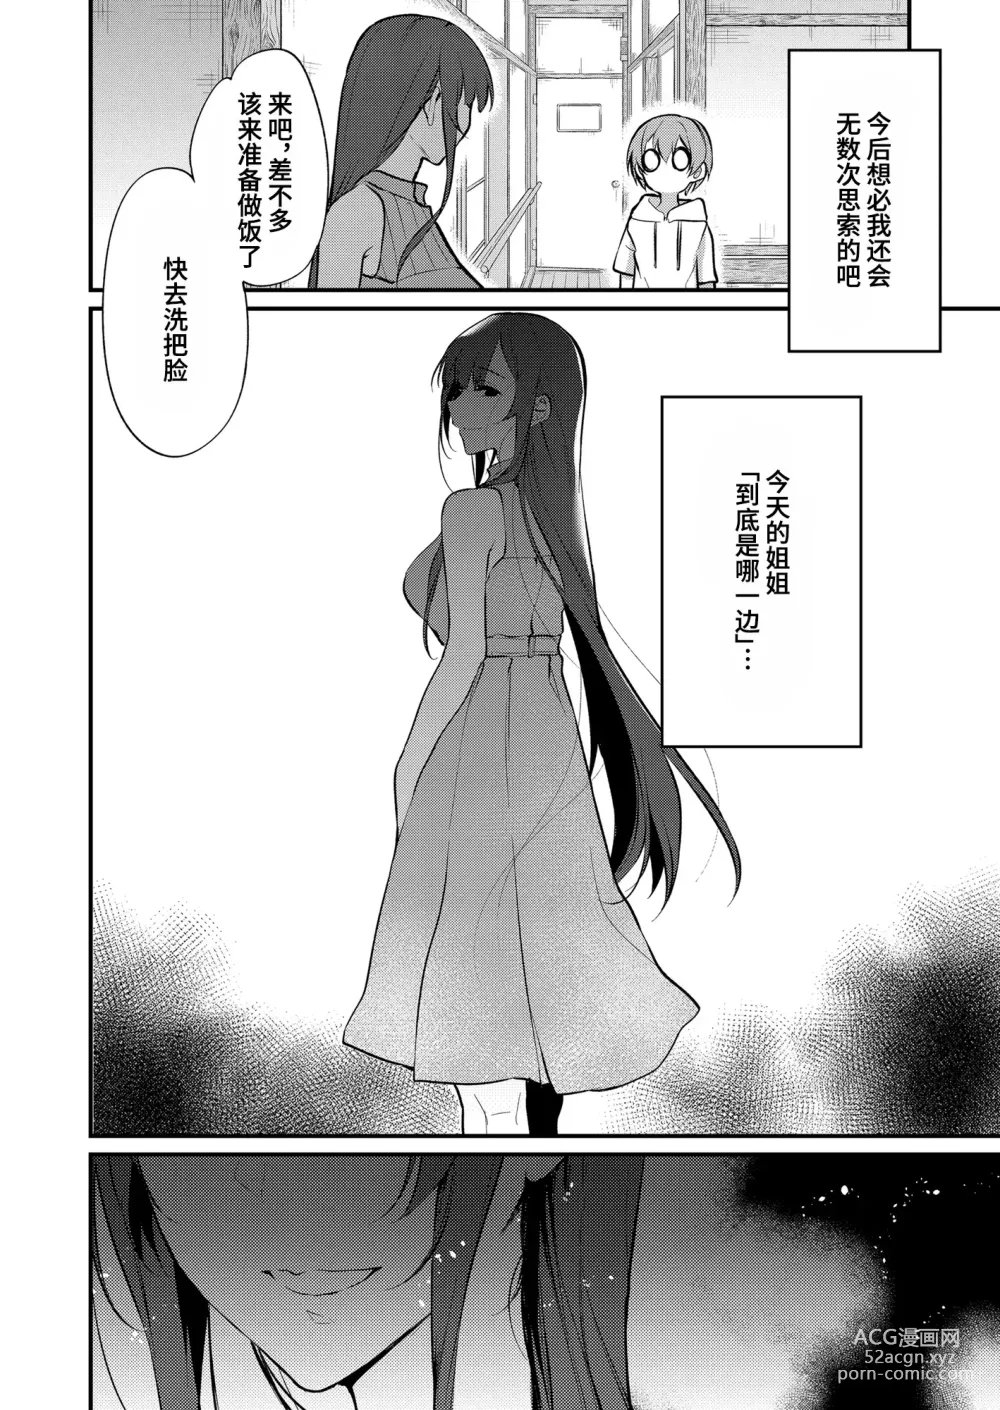 Page 330 of doujinshi Ane Naru Mono 1-11